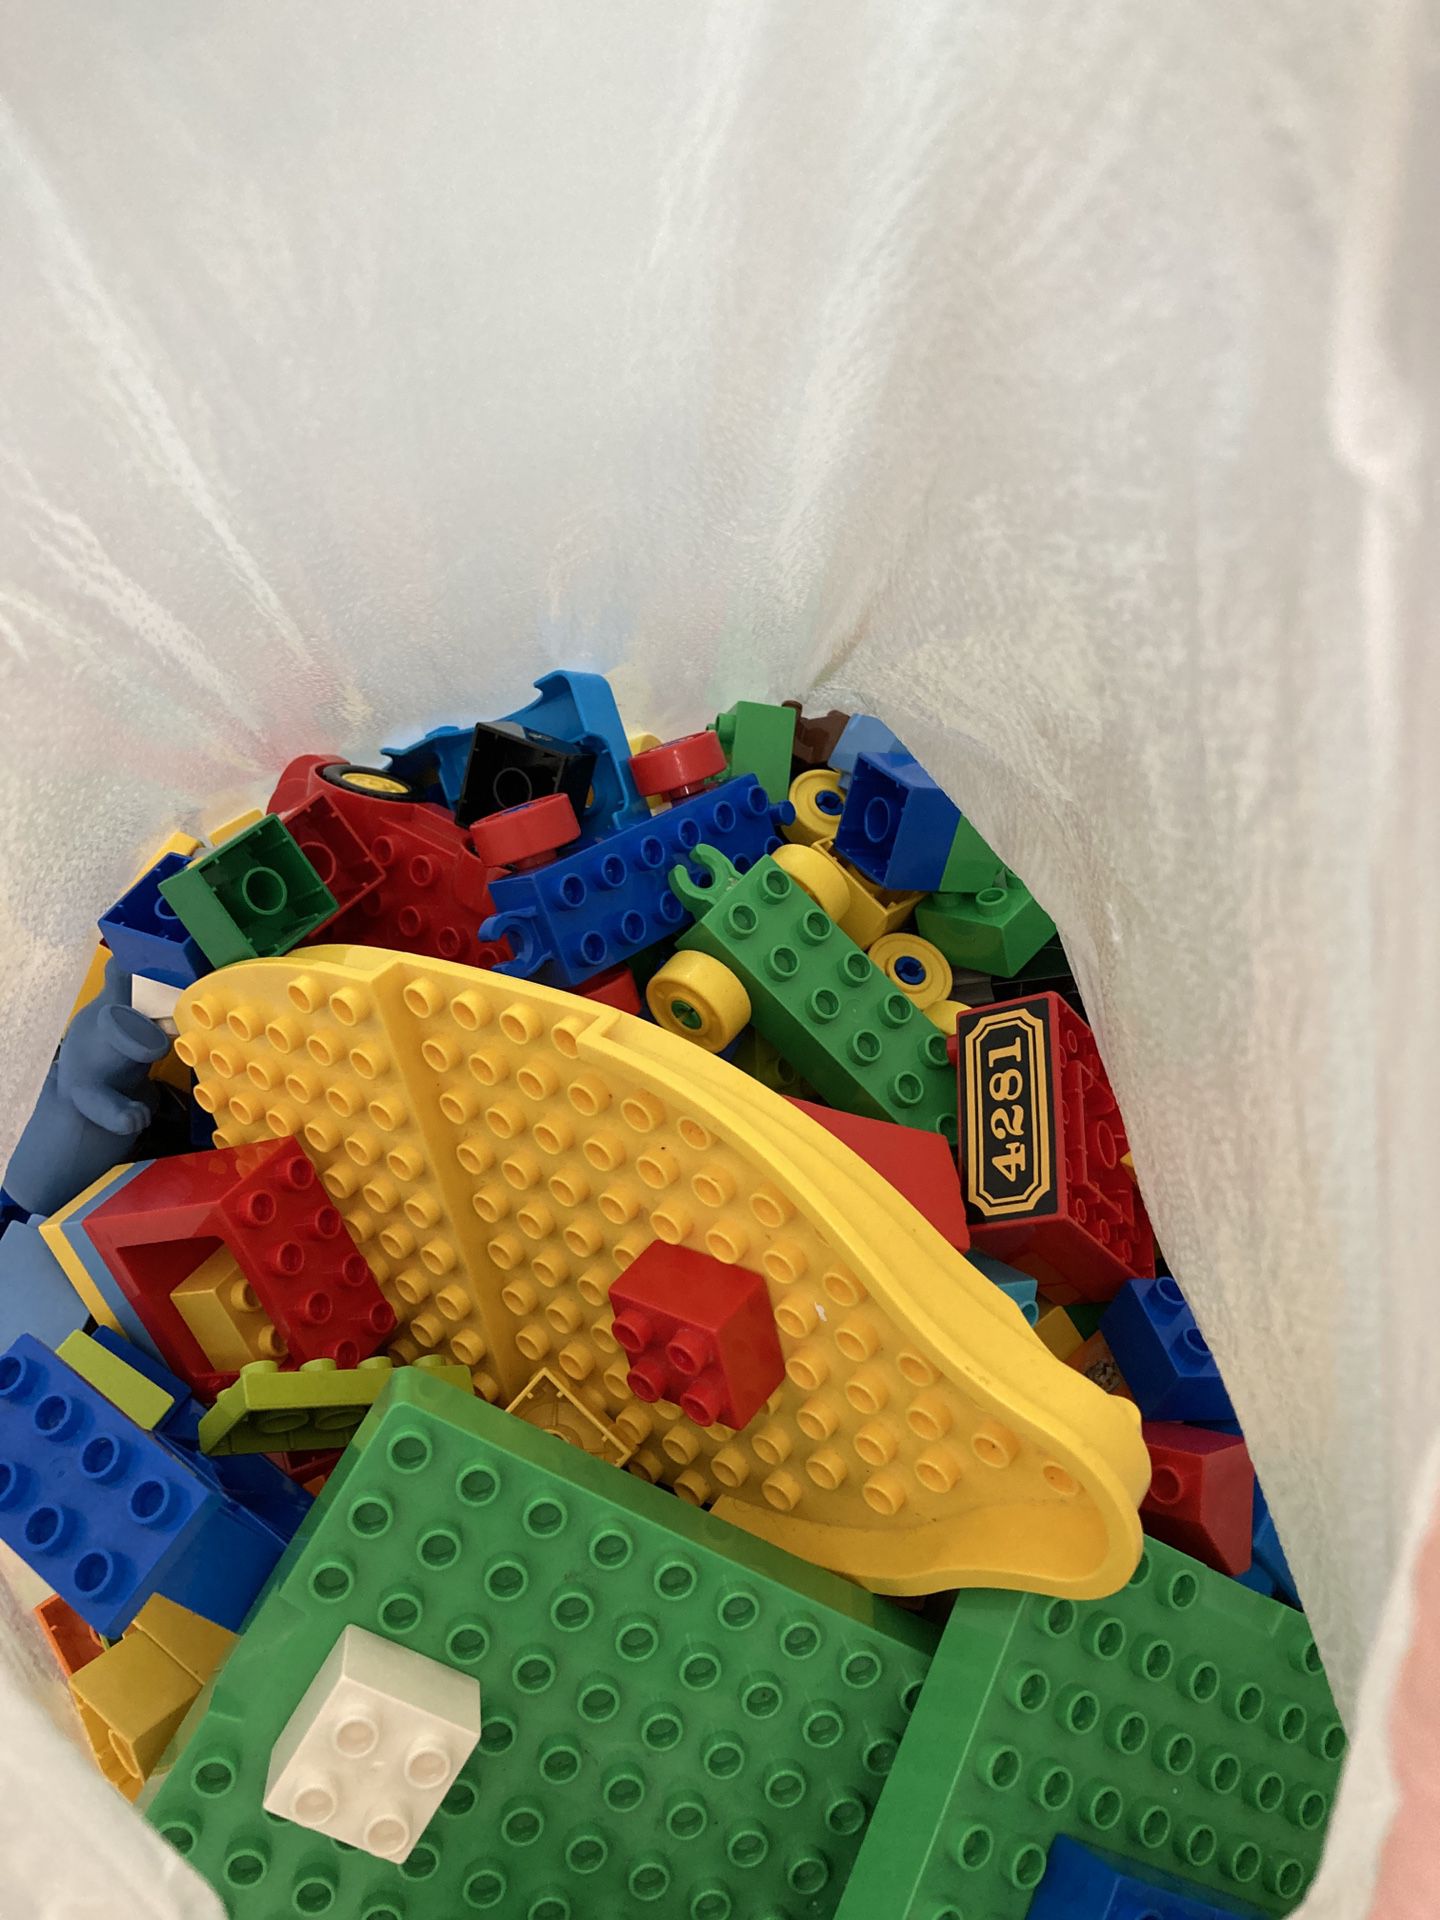 Bag full of LEGO’s